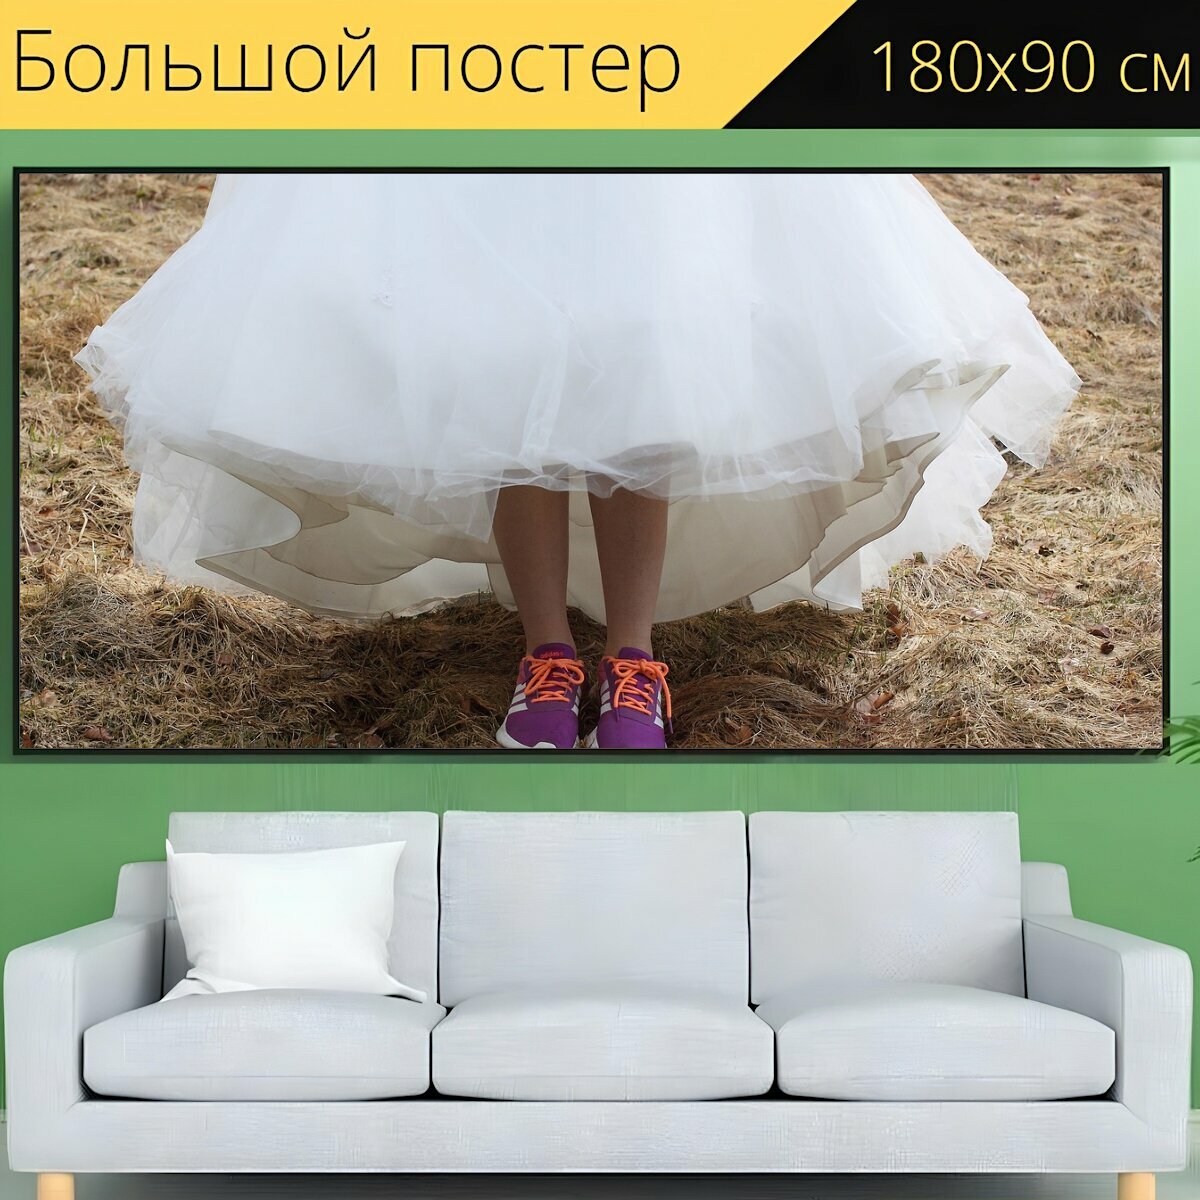 Большой постер "Свадебное платье, кроссовки, белый" 180 x 90 см. для интерьера